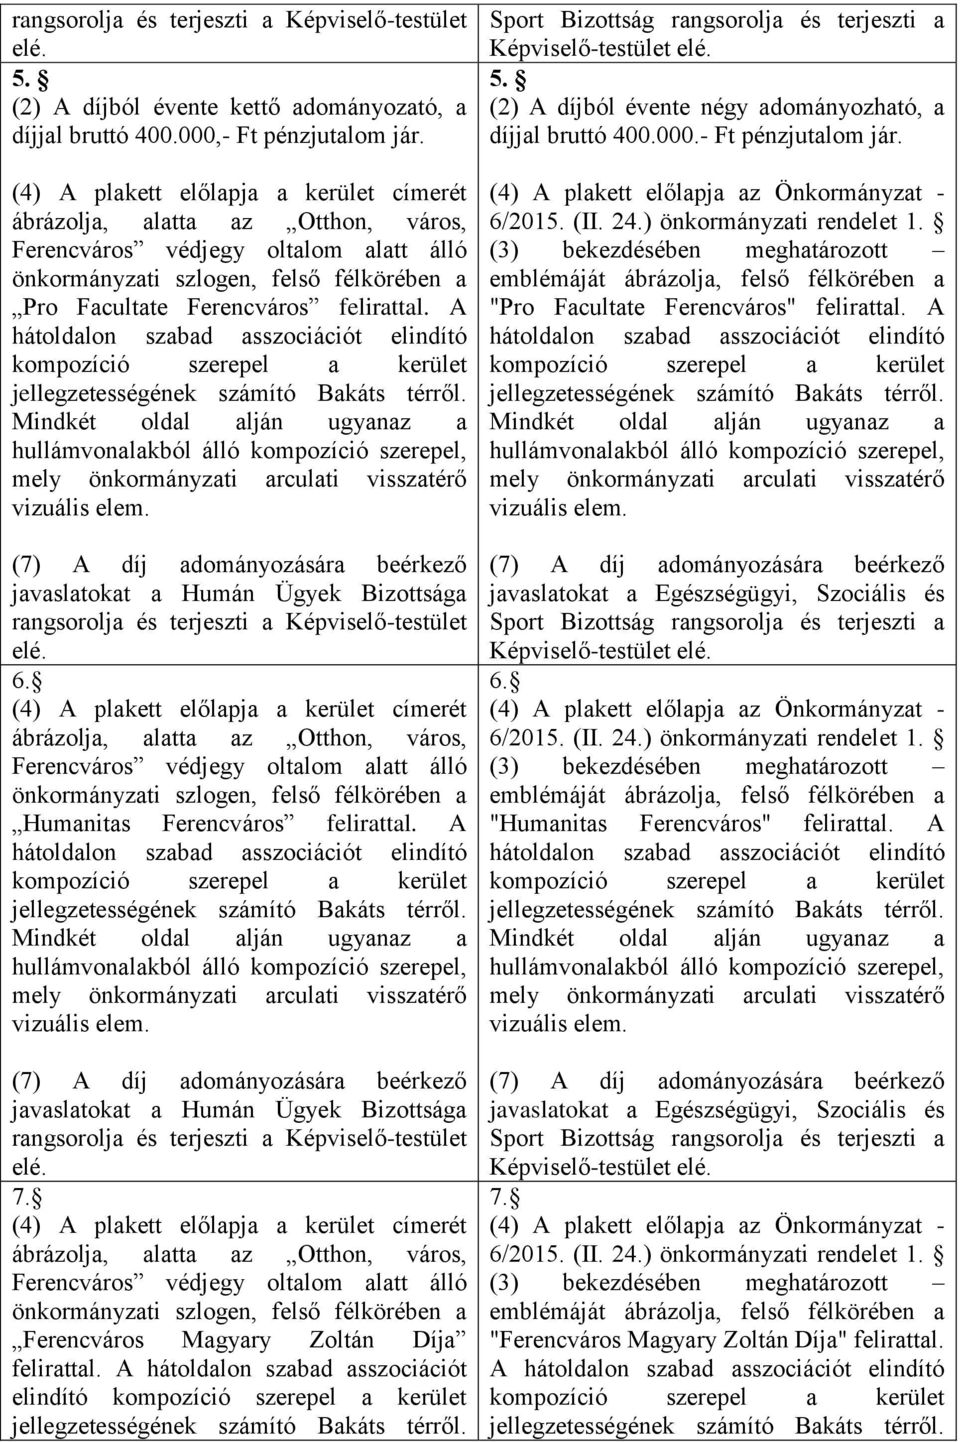 A javaslatokat a Humán Ügyek Bizottsága rangsorolja és terjeszti a Képviselő-testület elé. 7. Ferencváros Magyary Zoltán Díja felirattal.